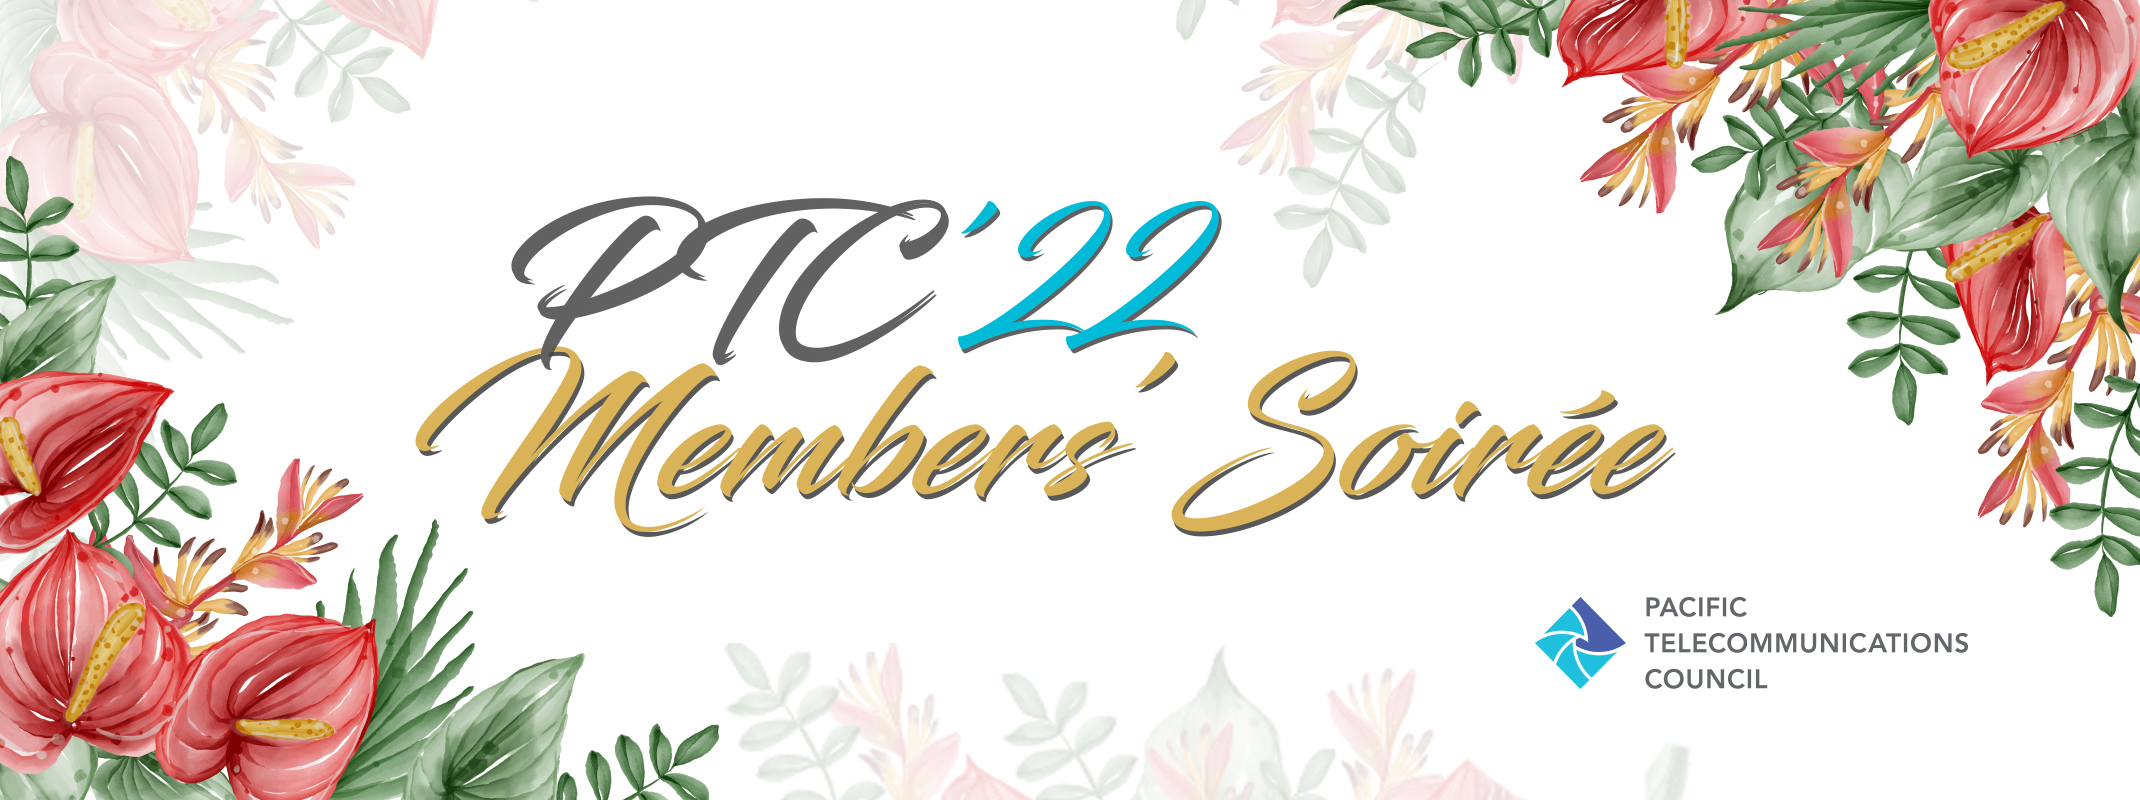 PTC'22 - Members' Soirée